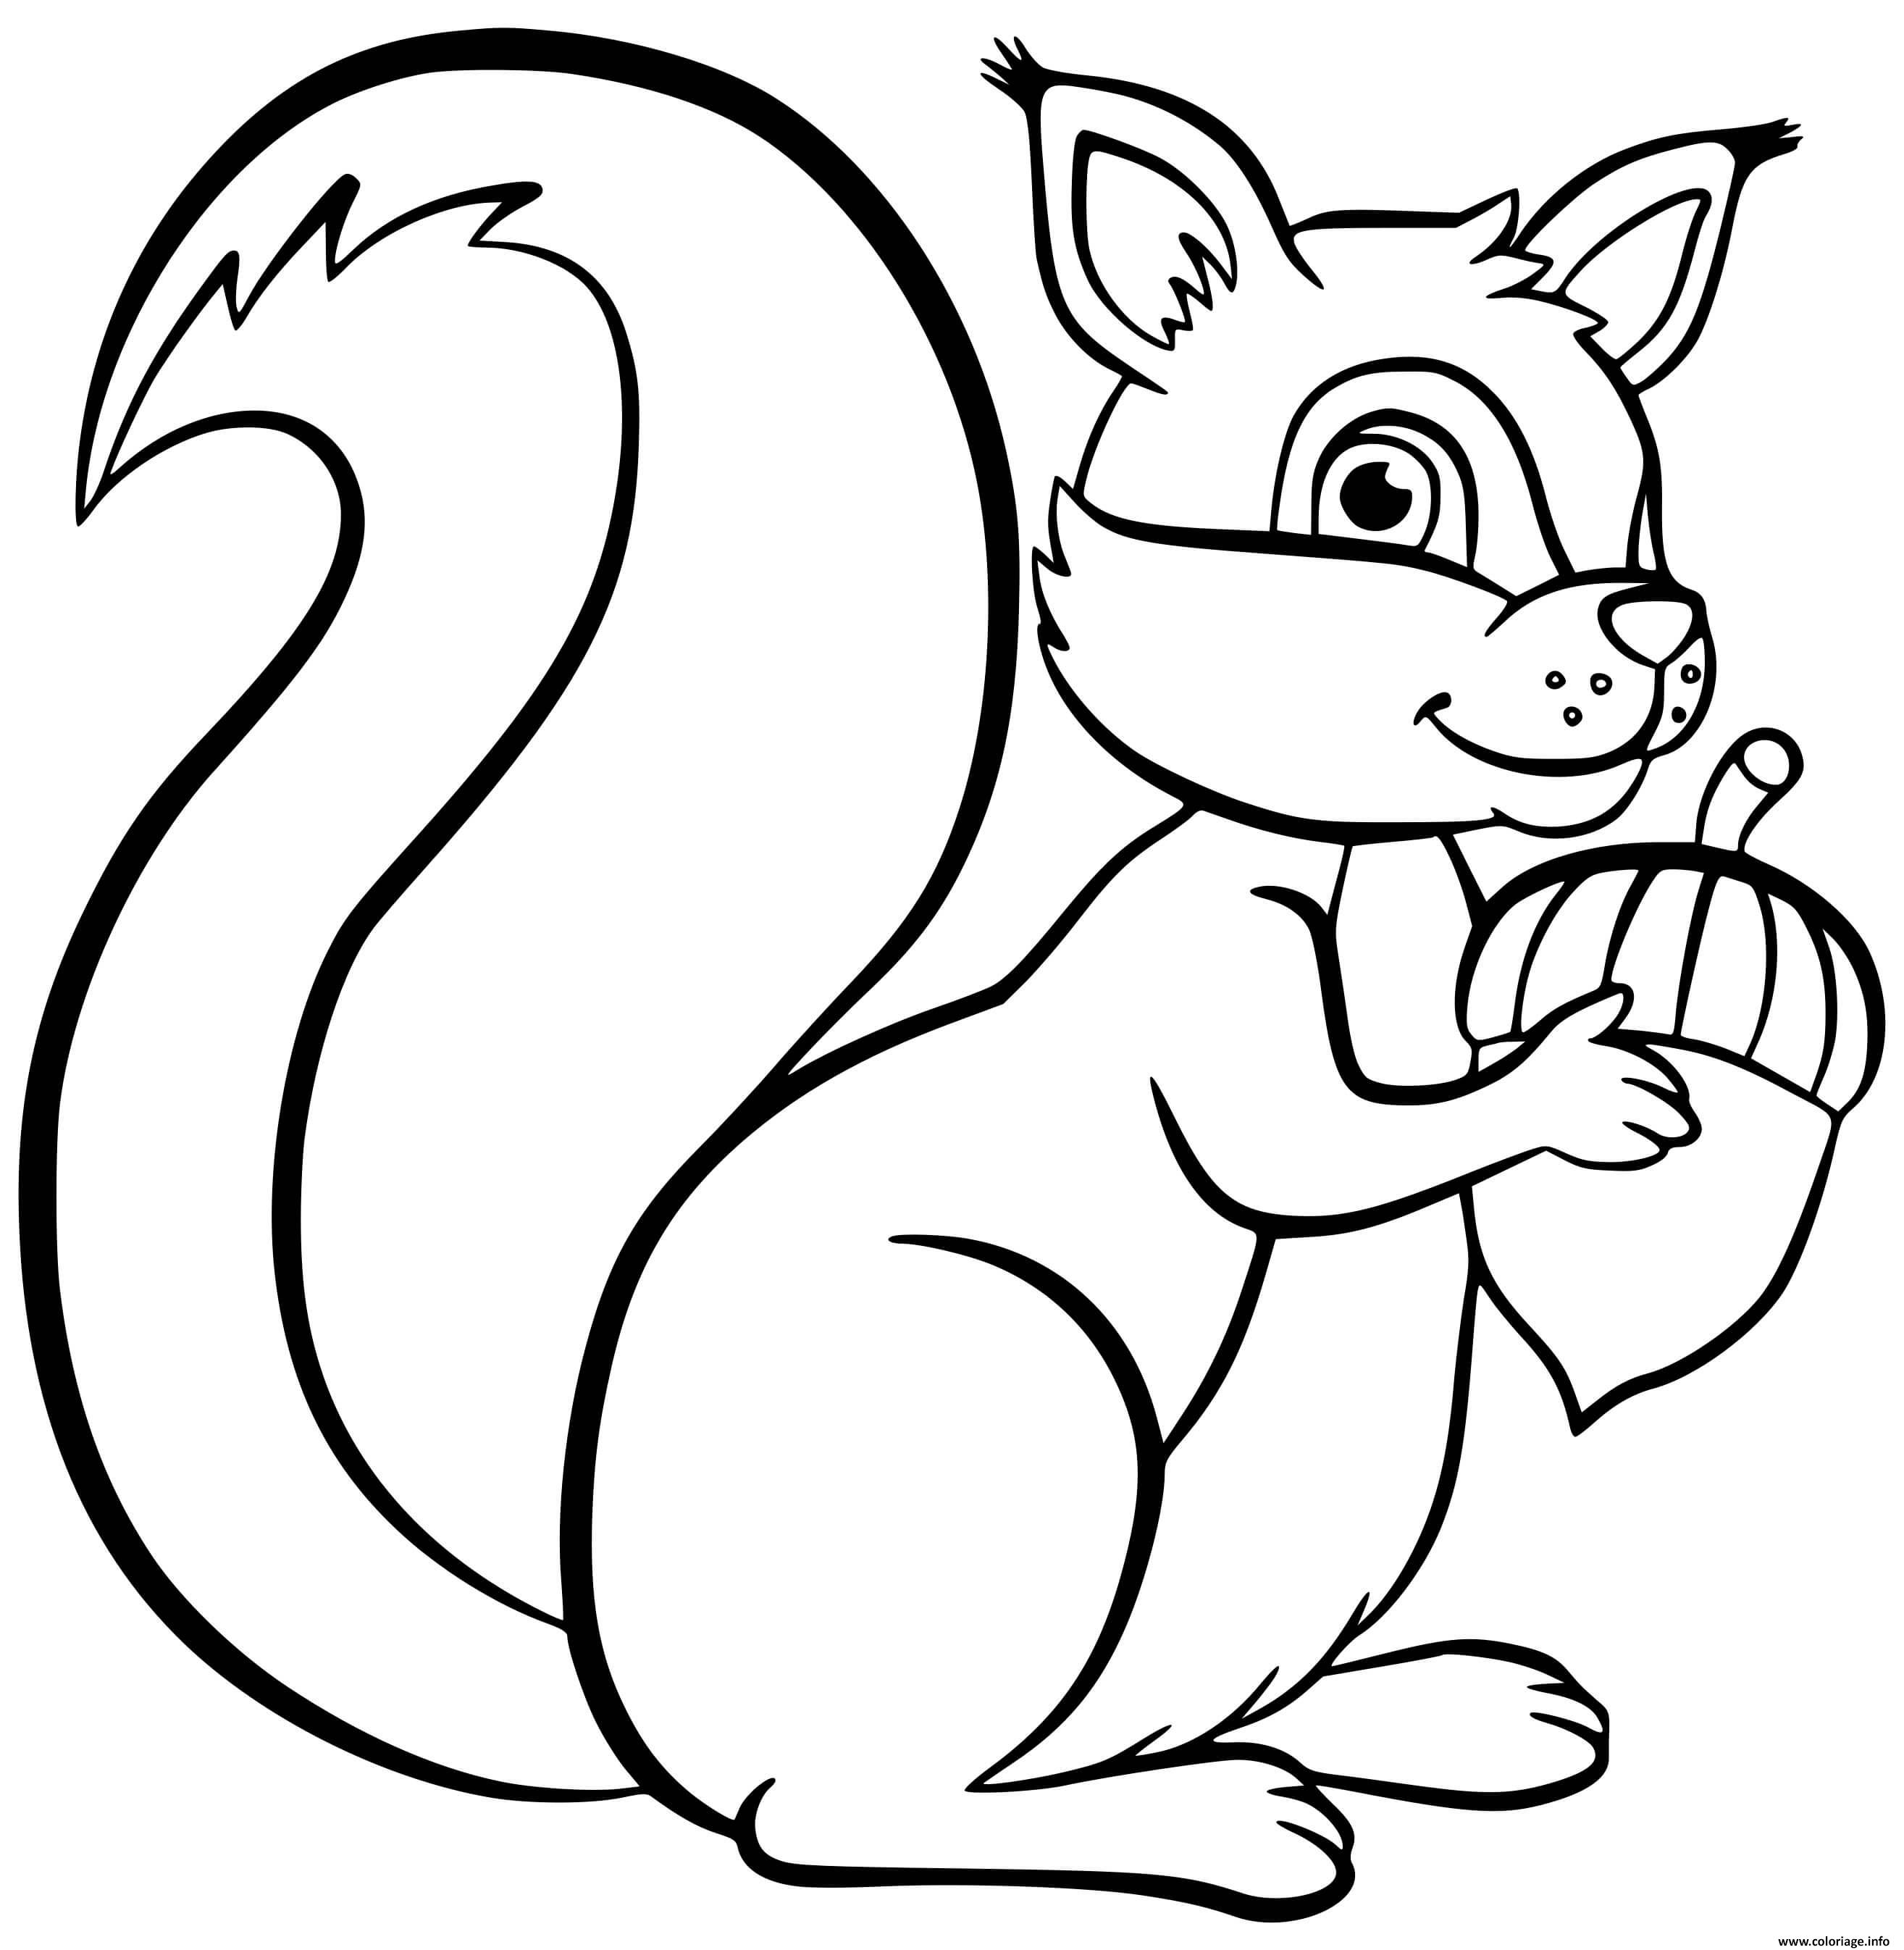 Dessin ecureuil squirrel chipmunk Coloriage Gratuit à Imprimer